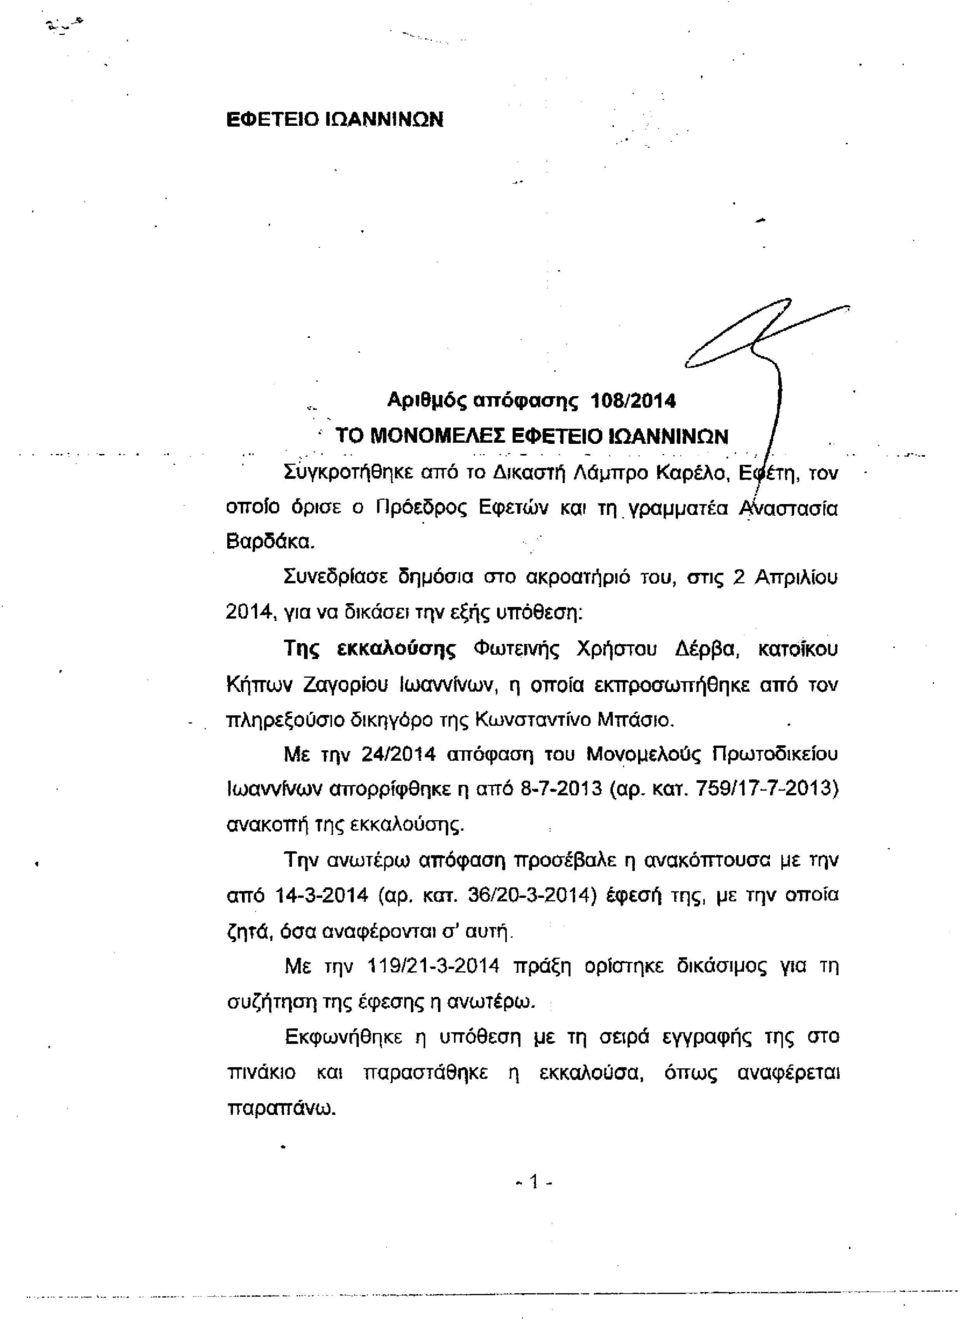 πληρεξούσιο δικηγόρο της Κωνσταντίνο Μπάσιο. Με την 24/2014 απόφαση του Μονομελούς Πρωτοδικείου Ιωαννίνων απορρίφθηκε η από 8-7-2013 (αρ. κατ. 759/17-7-2013) ανακοπή της εκκαλούσης.